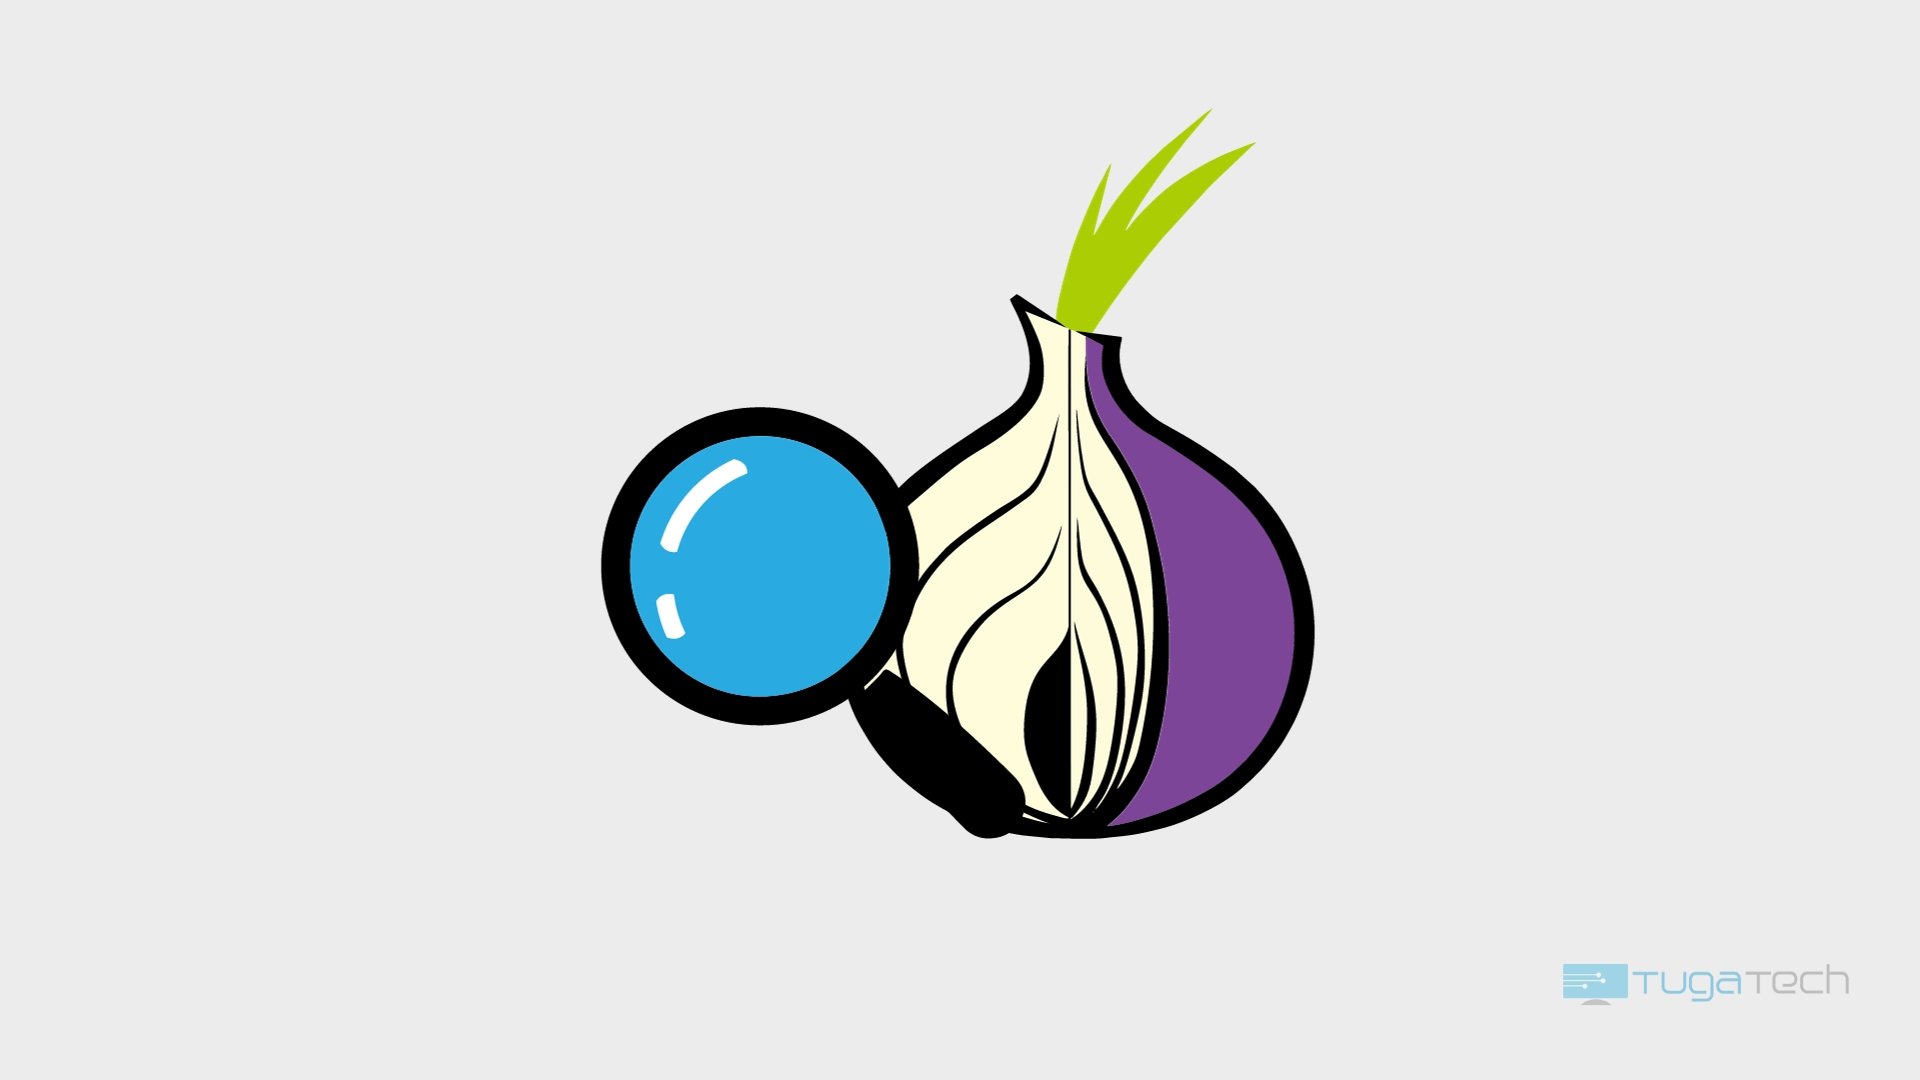 Tor Browser passa com sucesso auditoria de segurança